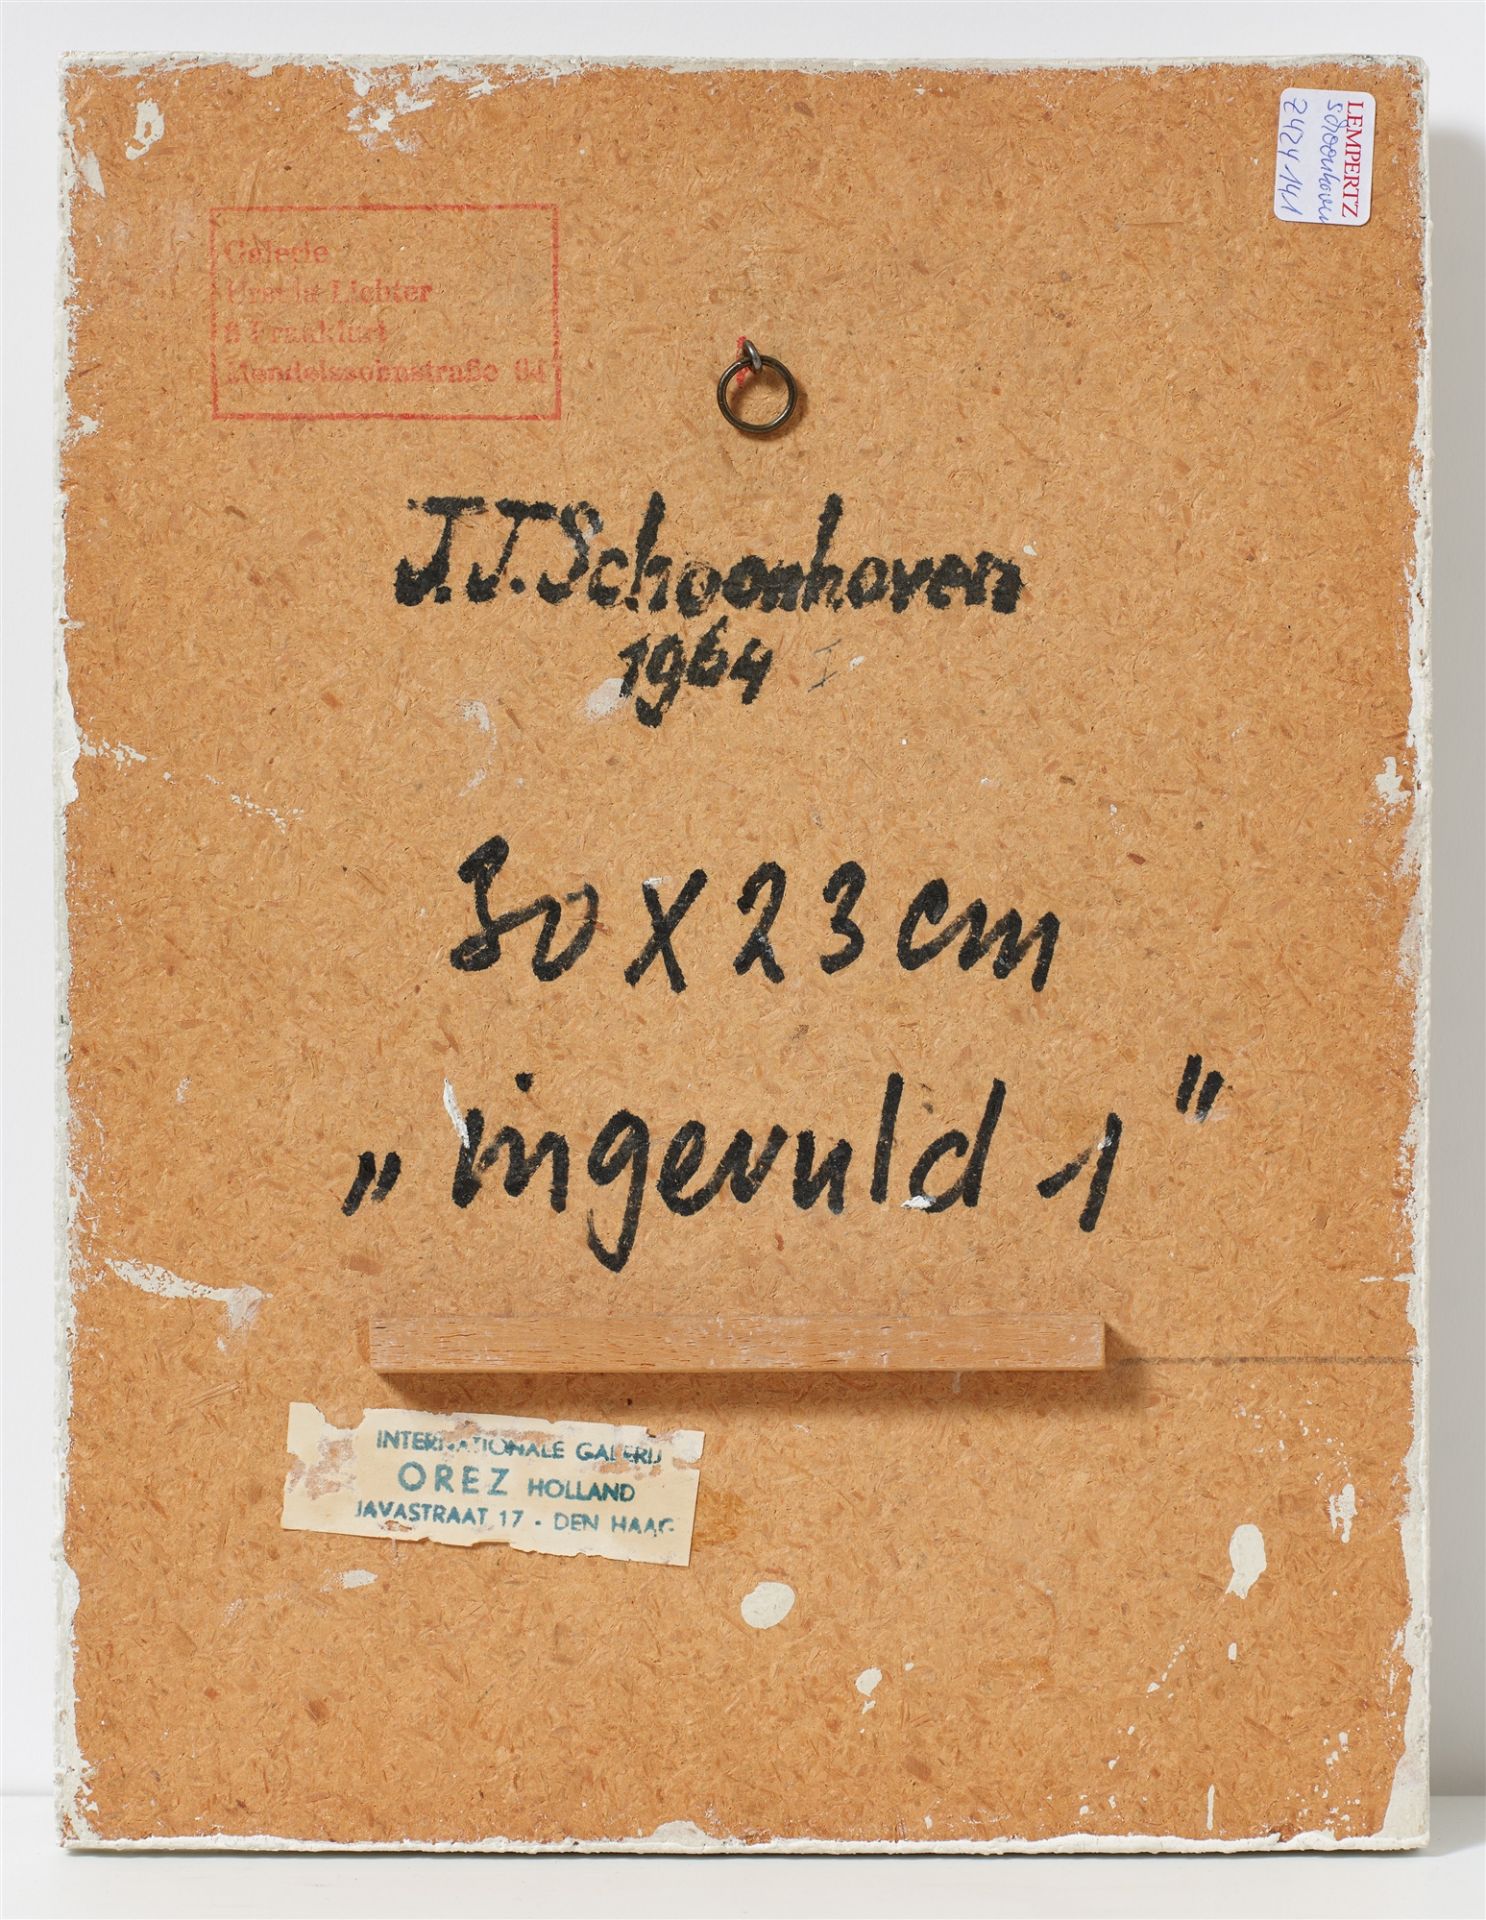 Jan J. Schoonhoven, Ingevuld 1 - Image 2 of 2